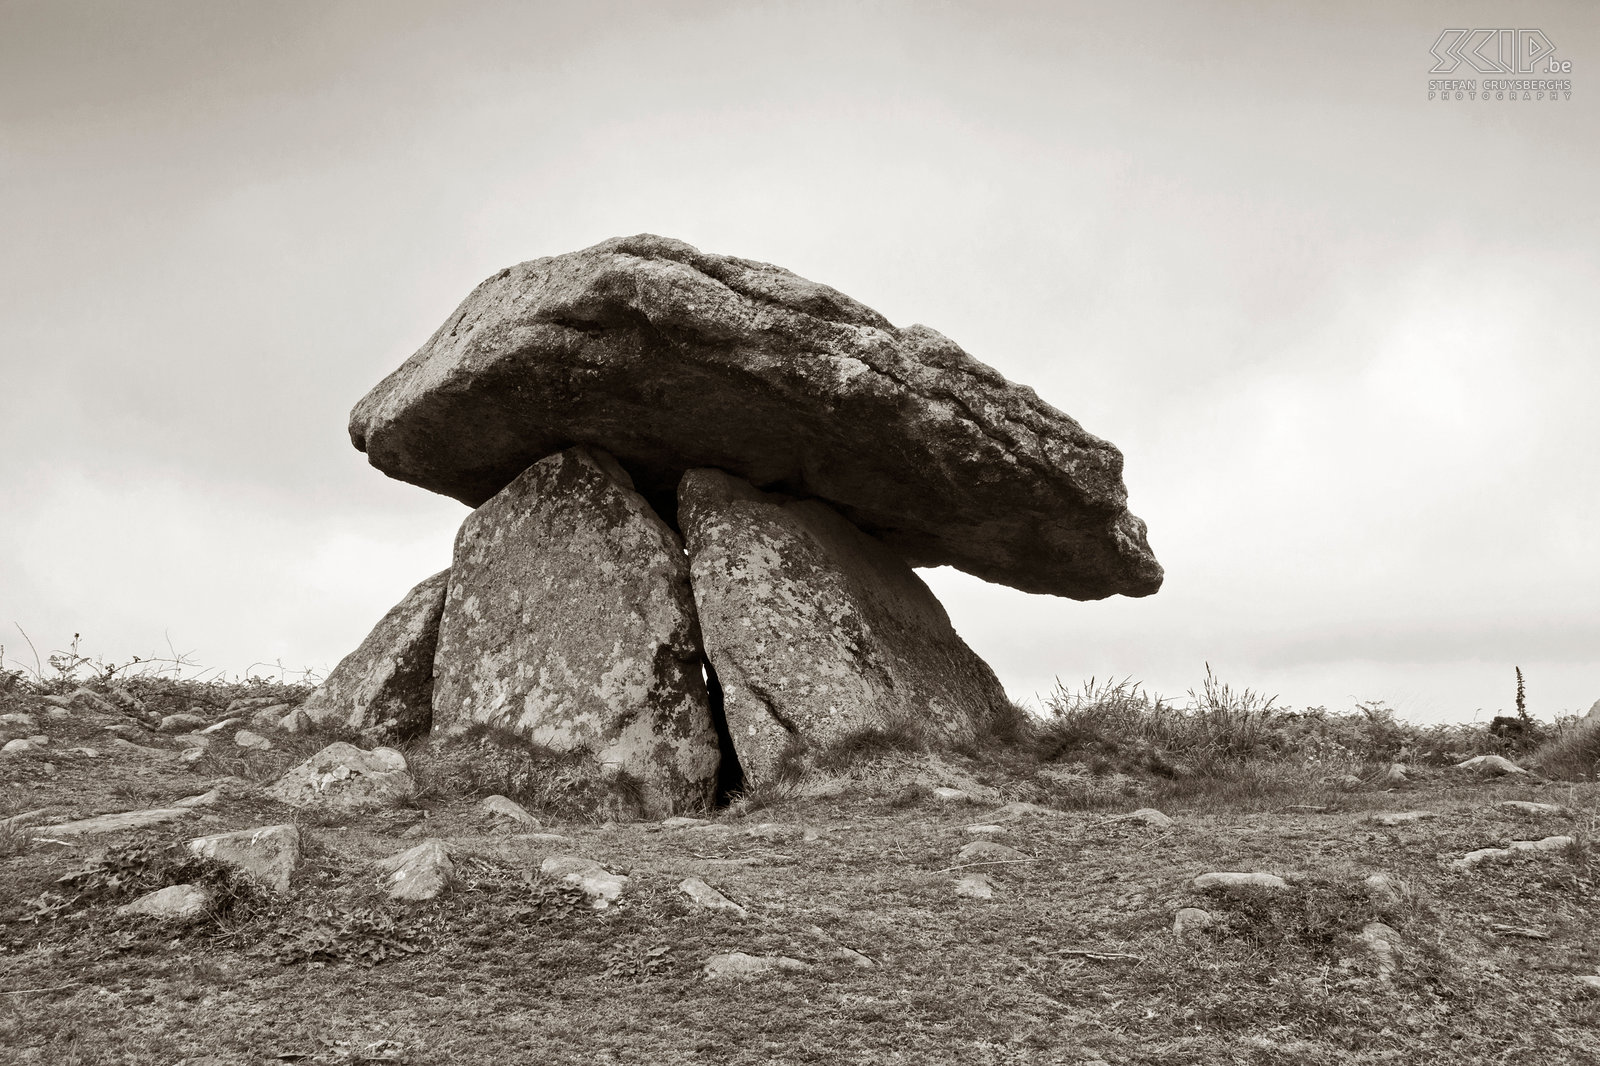 Chun Quoit Chûn Quoit is een van de best bewaarde megalieten in Cornwall. Het bevindt zich op de top van een heuvel  omgeven door heidevlaktes en de zee. Het paddenstoelvormige monument was een afgesloten grafkamer waarvan gedacht wordt dat deze rond 2400 v. Chr. gebouwd werd. Stefan Cruysberghs